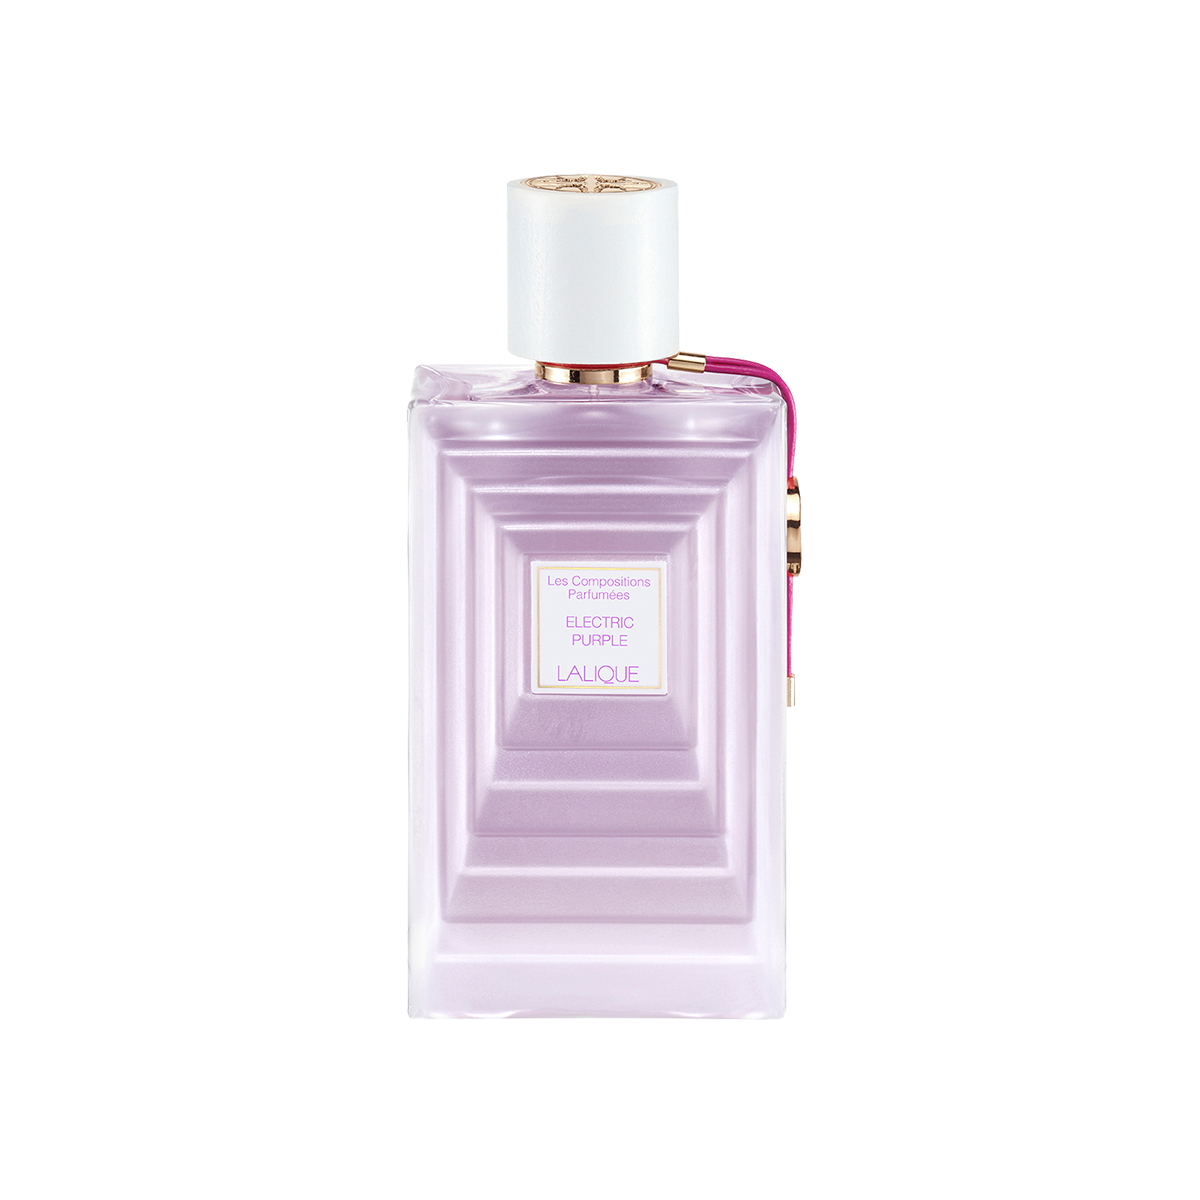 Les Compositions Parfumées<br>Electric Purple / Eau de Parfum 100ml